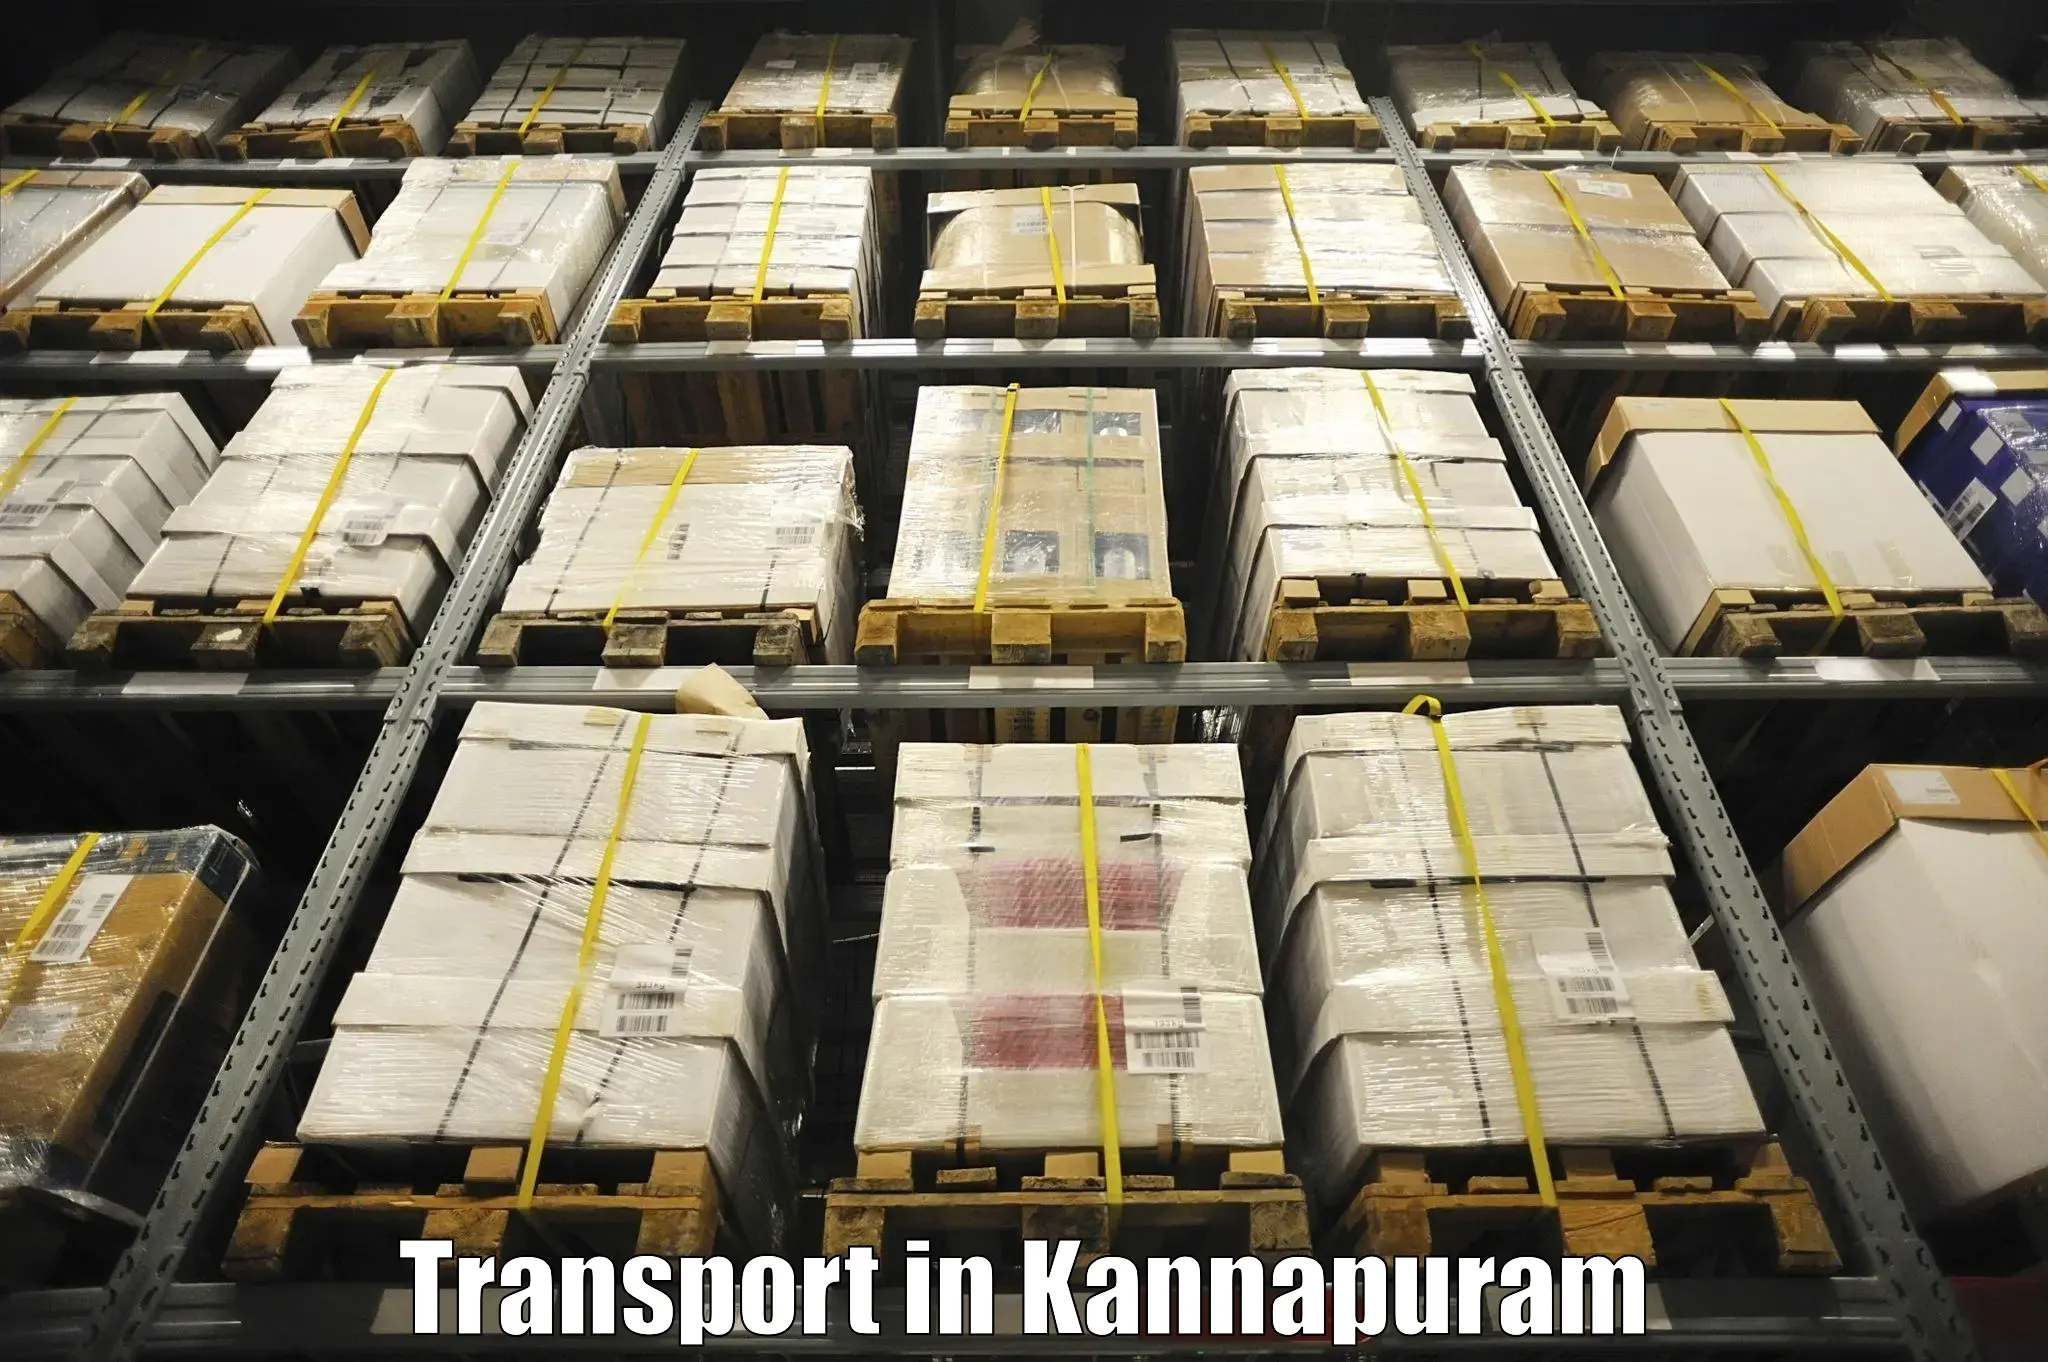 Transportation solution services in Kannapuram